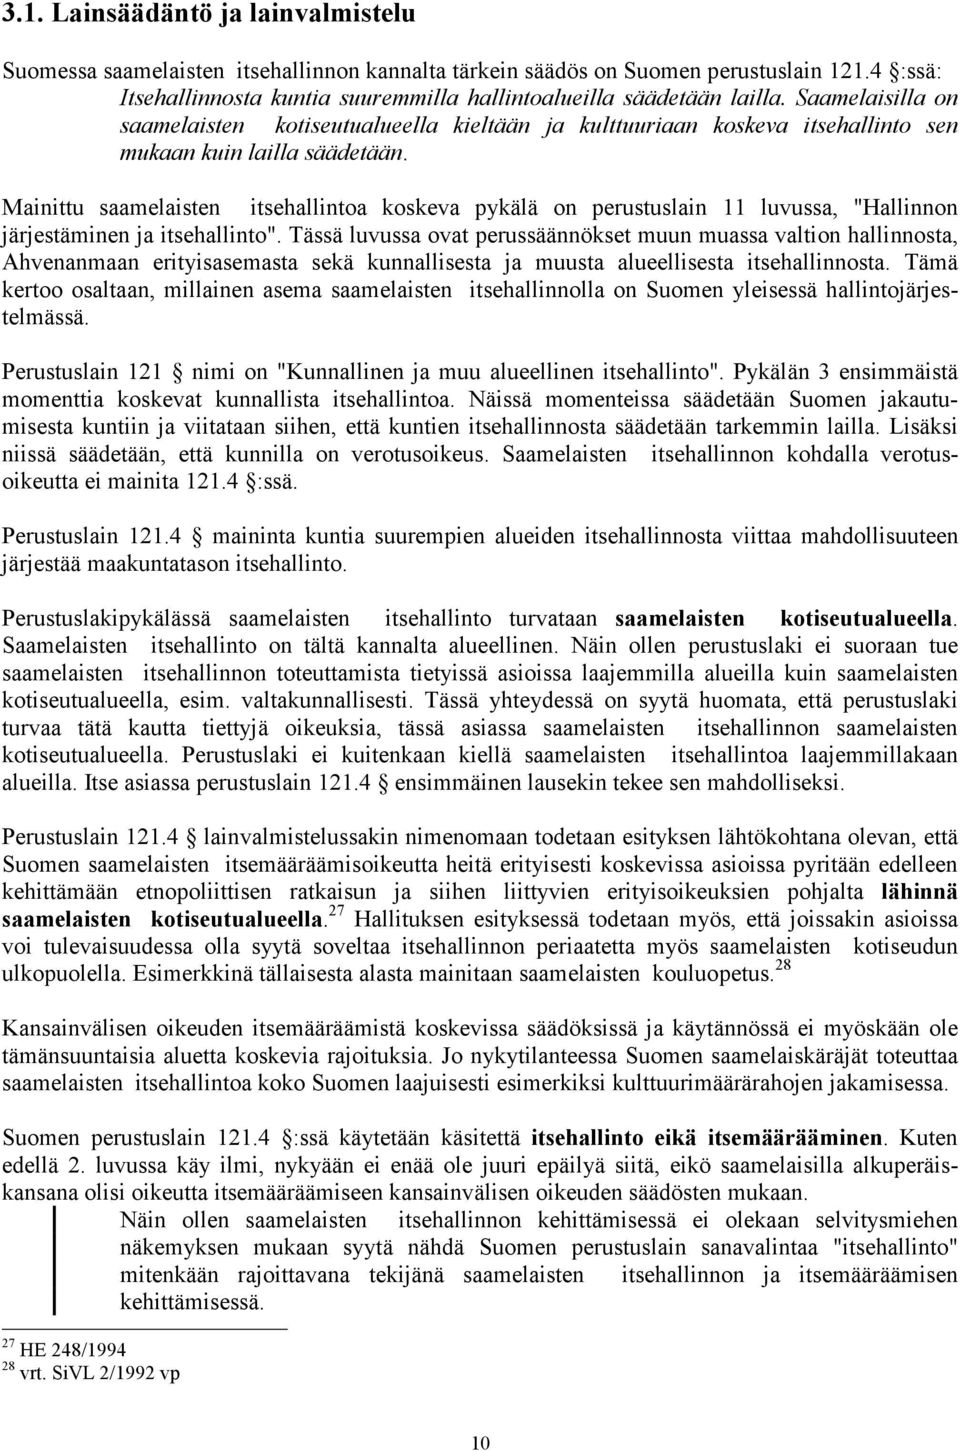 Mainittu saamelaisten itsehallintoa koskeva pykälä on perustuslain 11 luvussa, "Hallinnon järjestäminen ja itsehallinto".